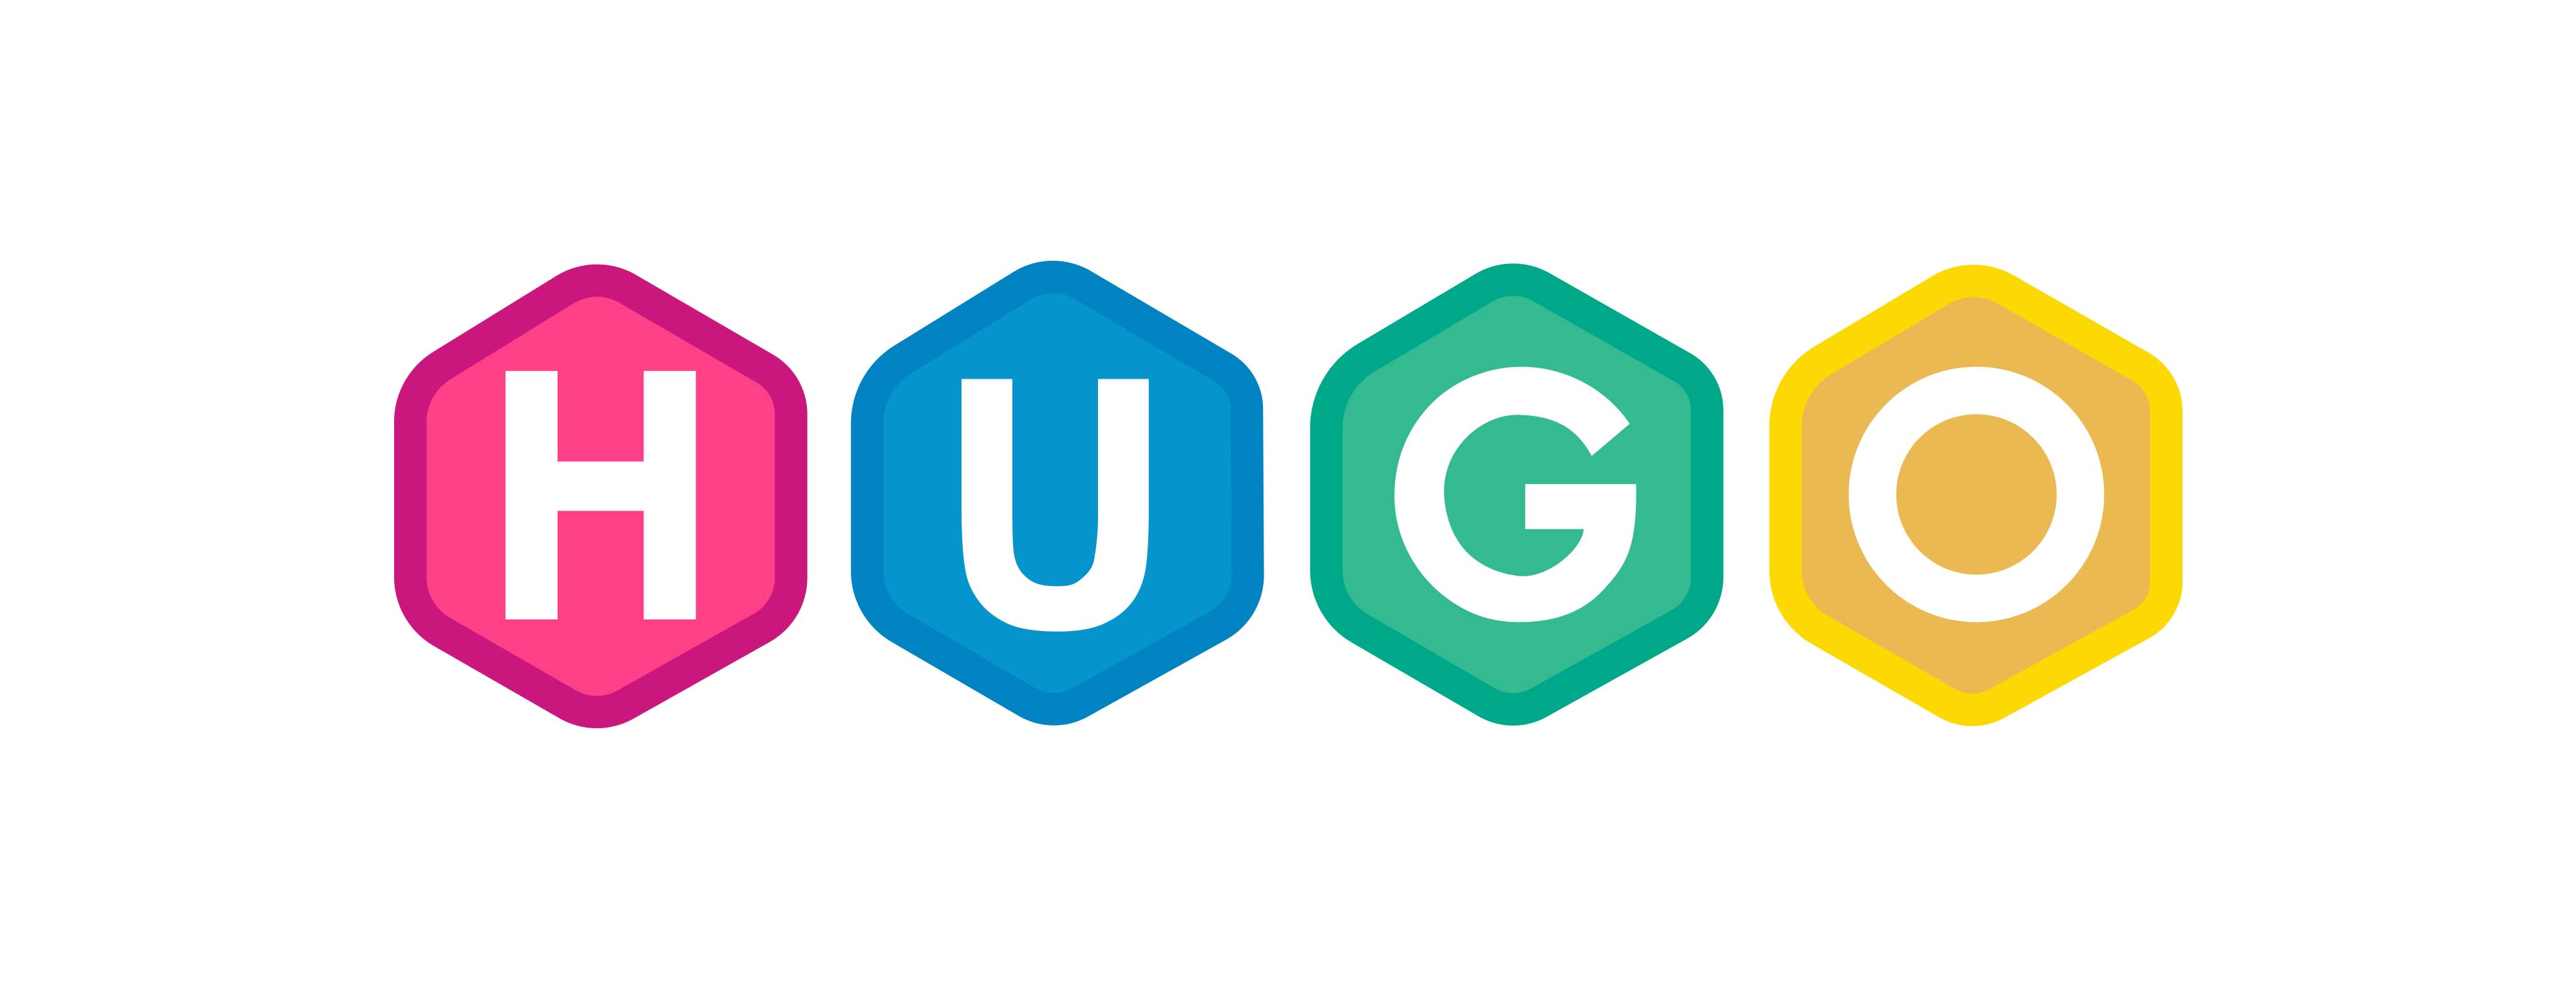 The HUGO logo